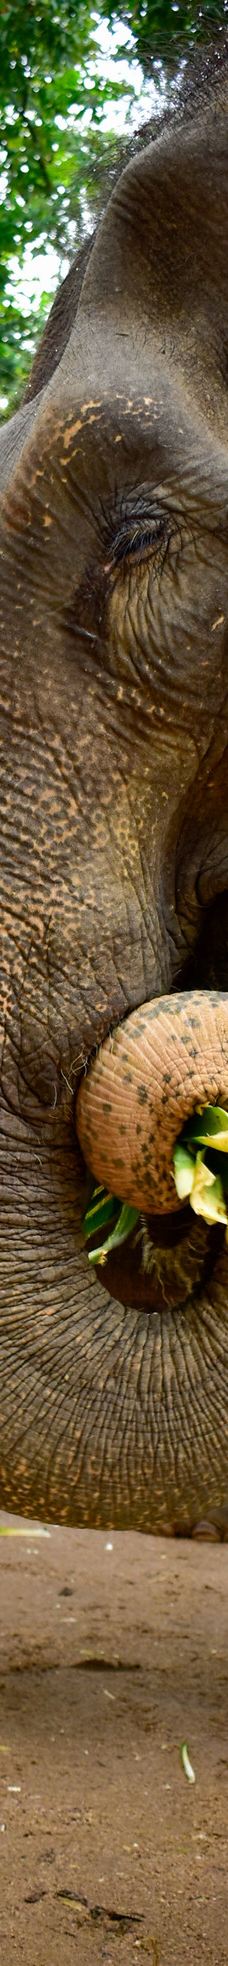 苏梅岛丛林大象保护区-苏梅岛